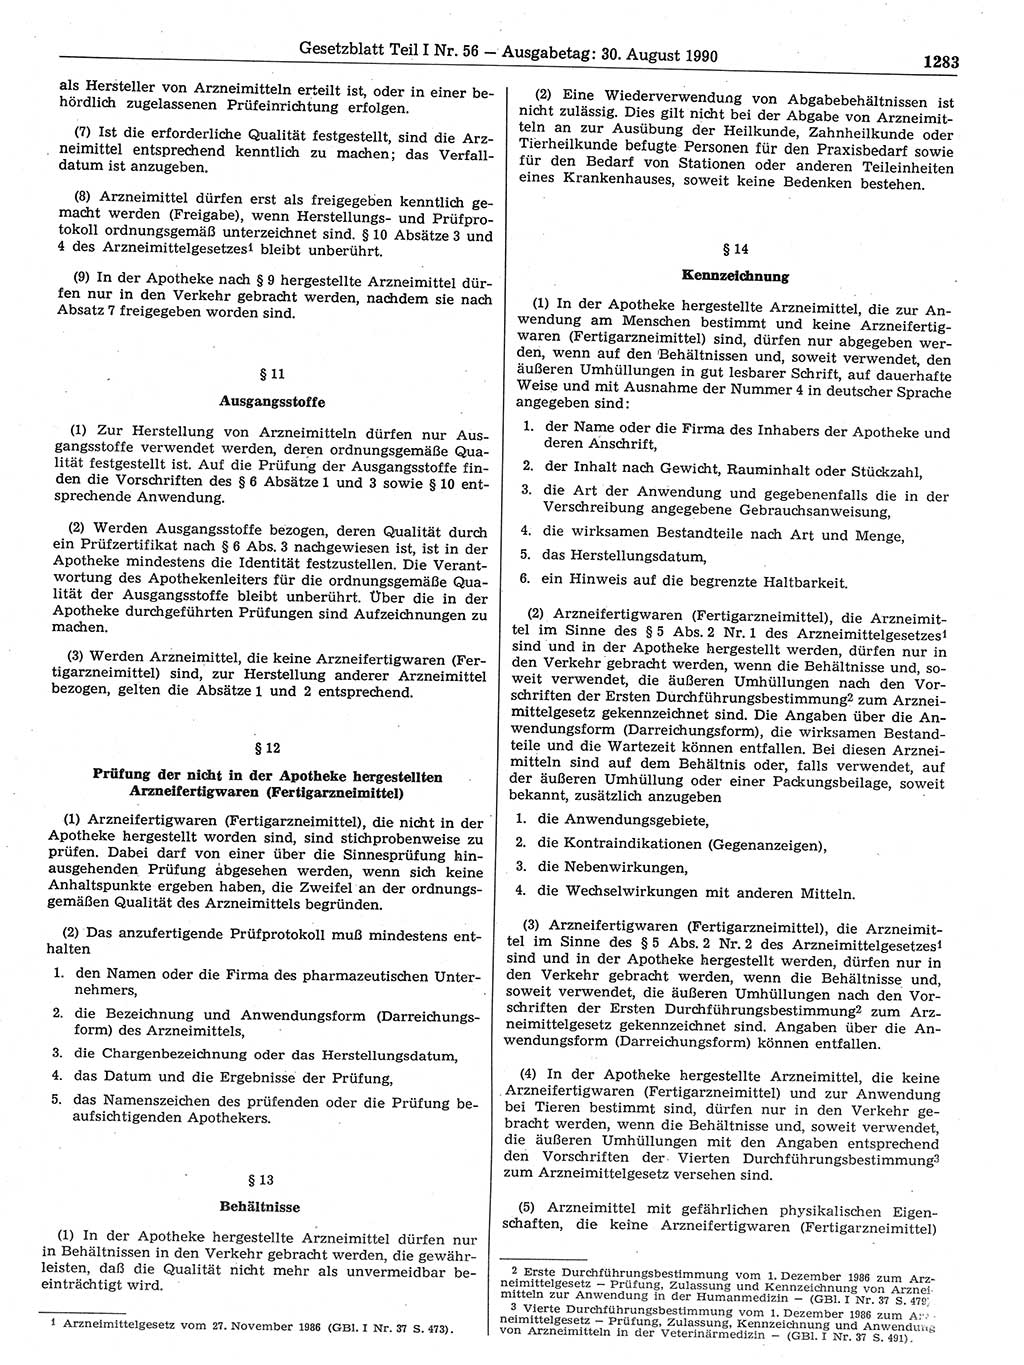 Gesetzblatt (GBl.) der Deutschen Demokratischen Republik (DDR) Teil Ⅰ 1990, Seite 1283 (GBl. DDR Ⅰ 1990, S. 1283)